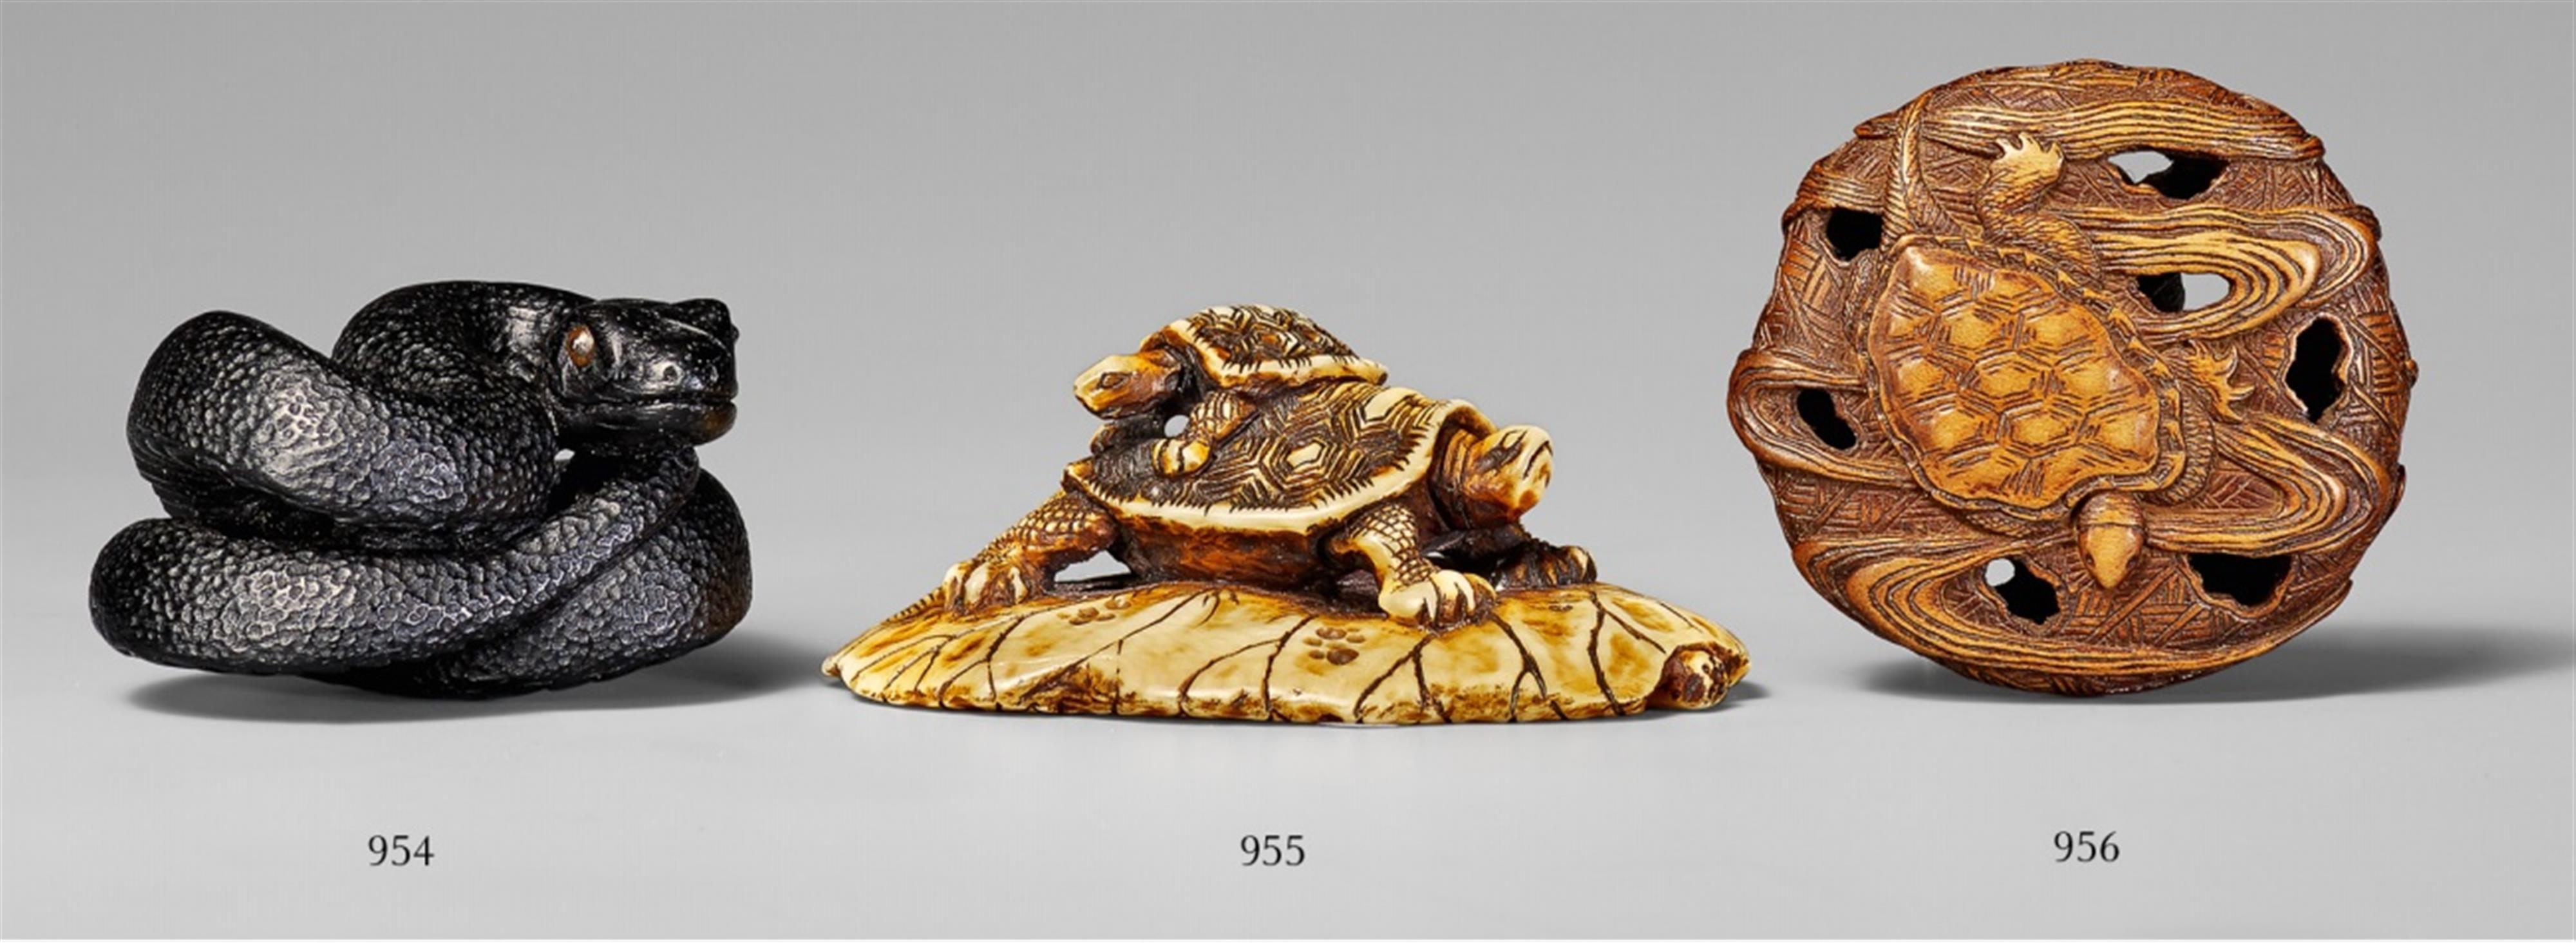 Zwei Schildkröten auf Lotosblatt. Elfenbein. 2. Hälfte 19. Jh. - image-1